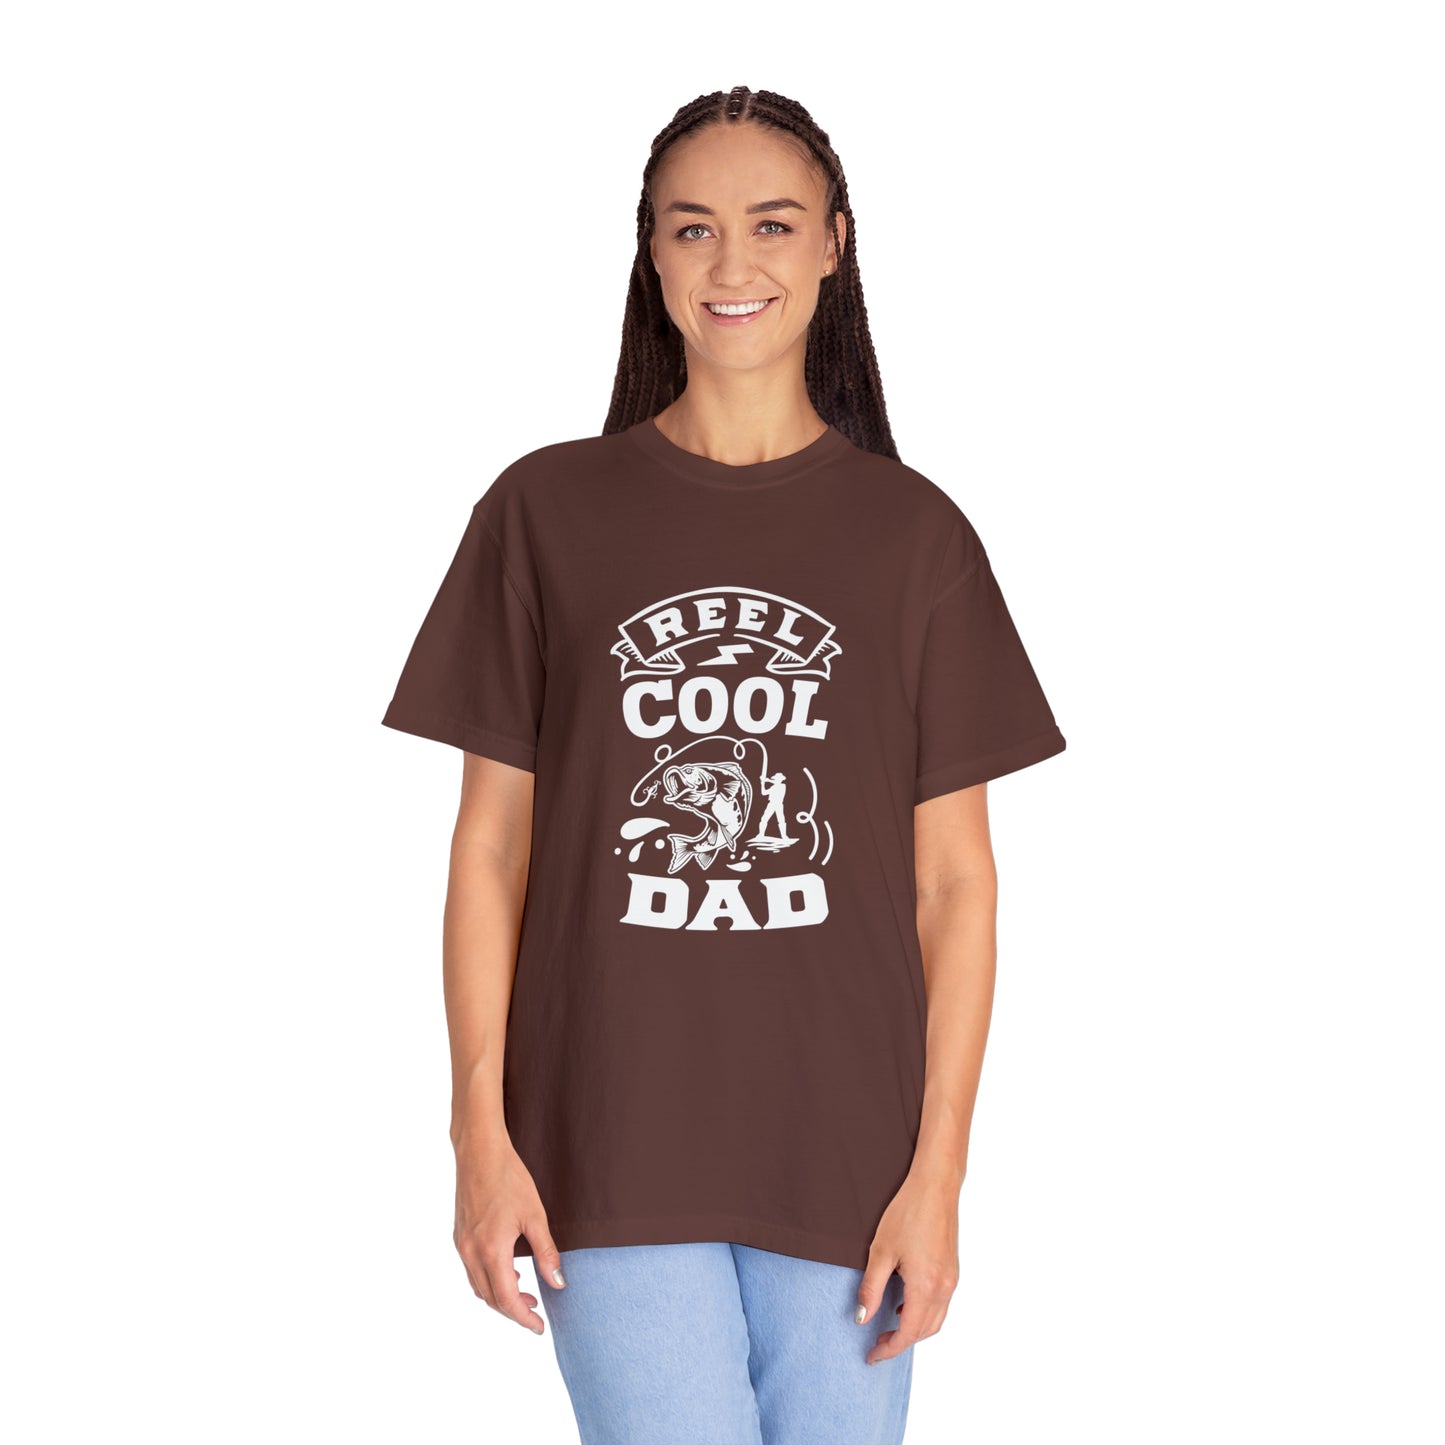 Reel Cool Dad White T-Shirt